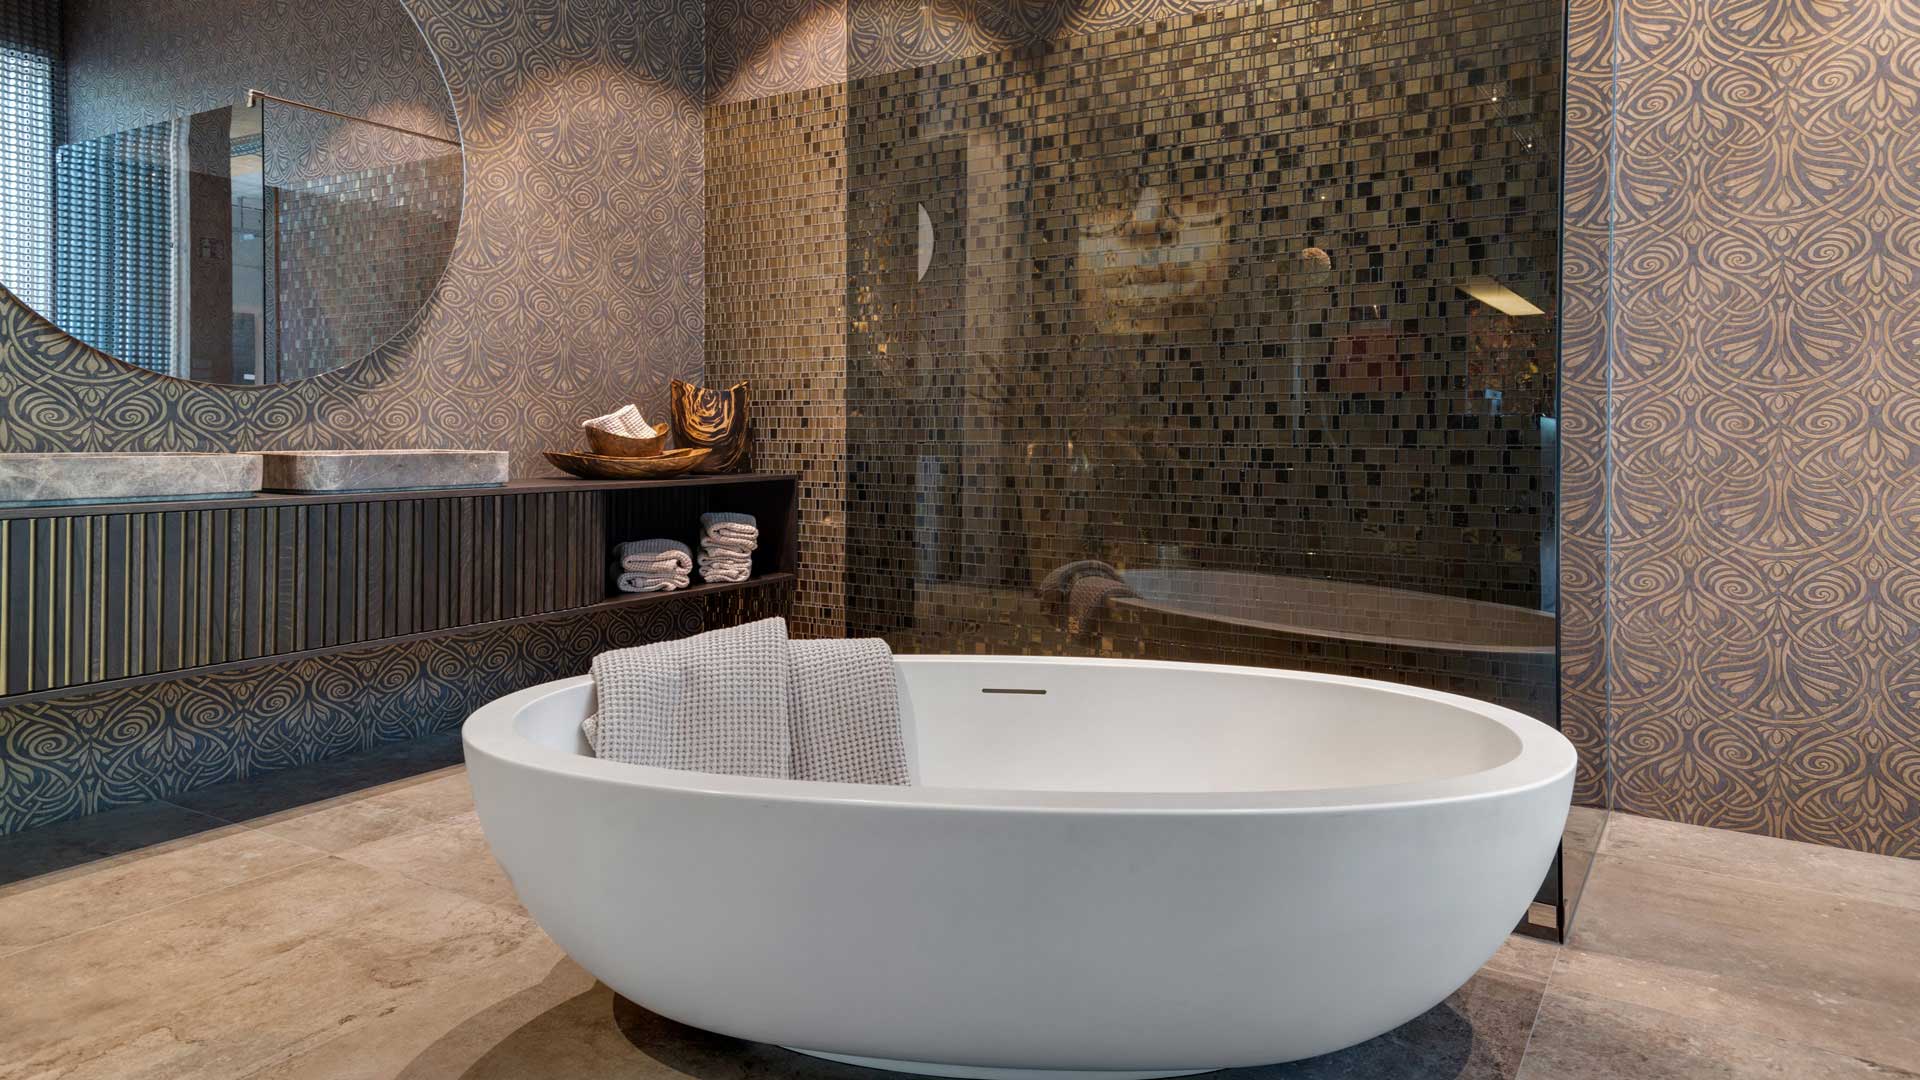 Mosaikfliesen in Badezimmer mit freistehender Badewanne